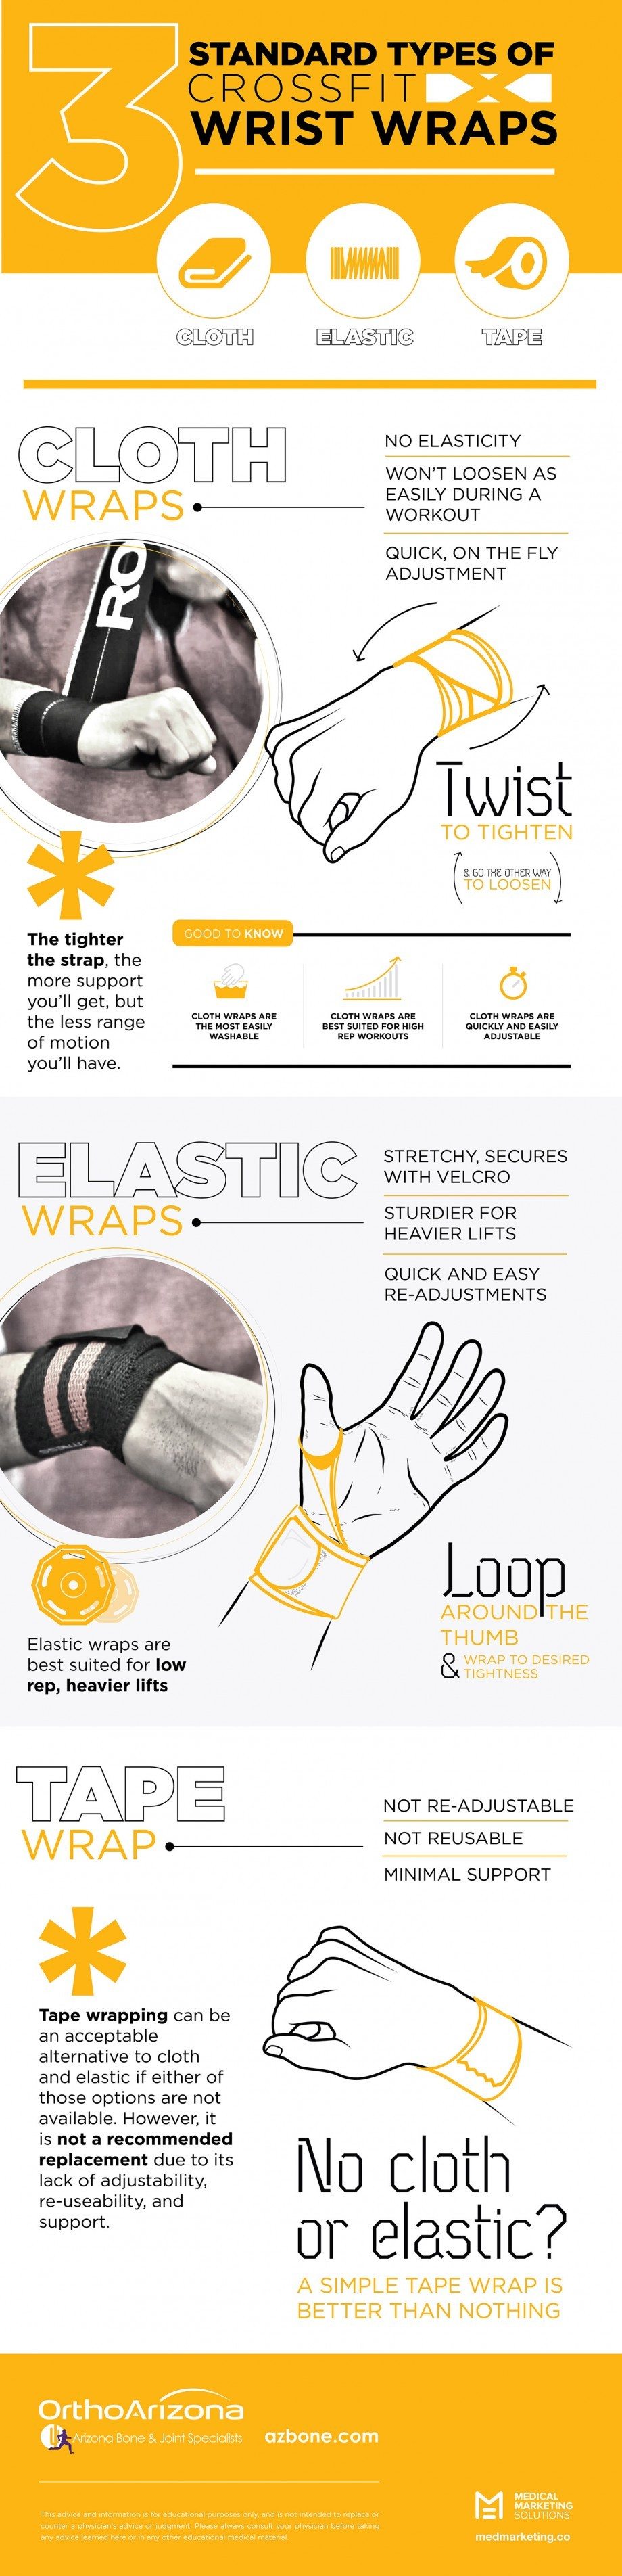 Understanding Wrist Wraps